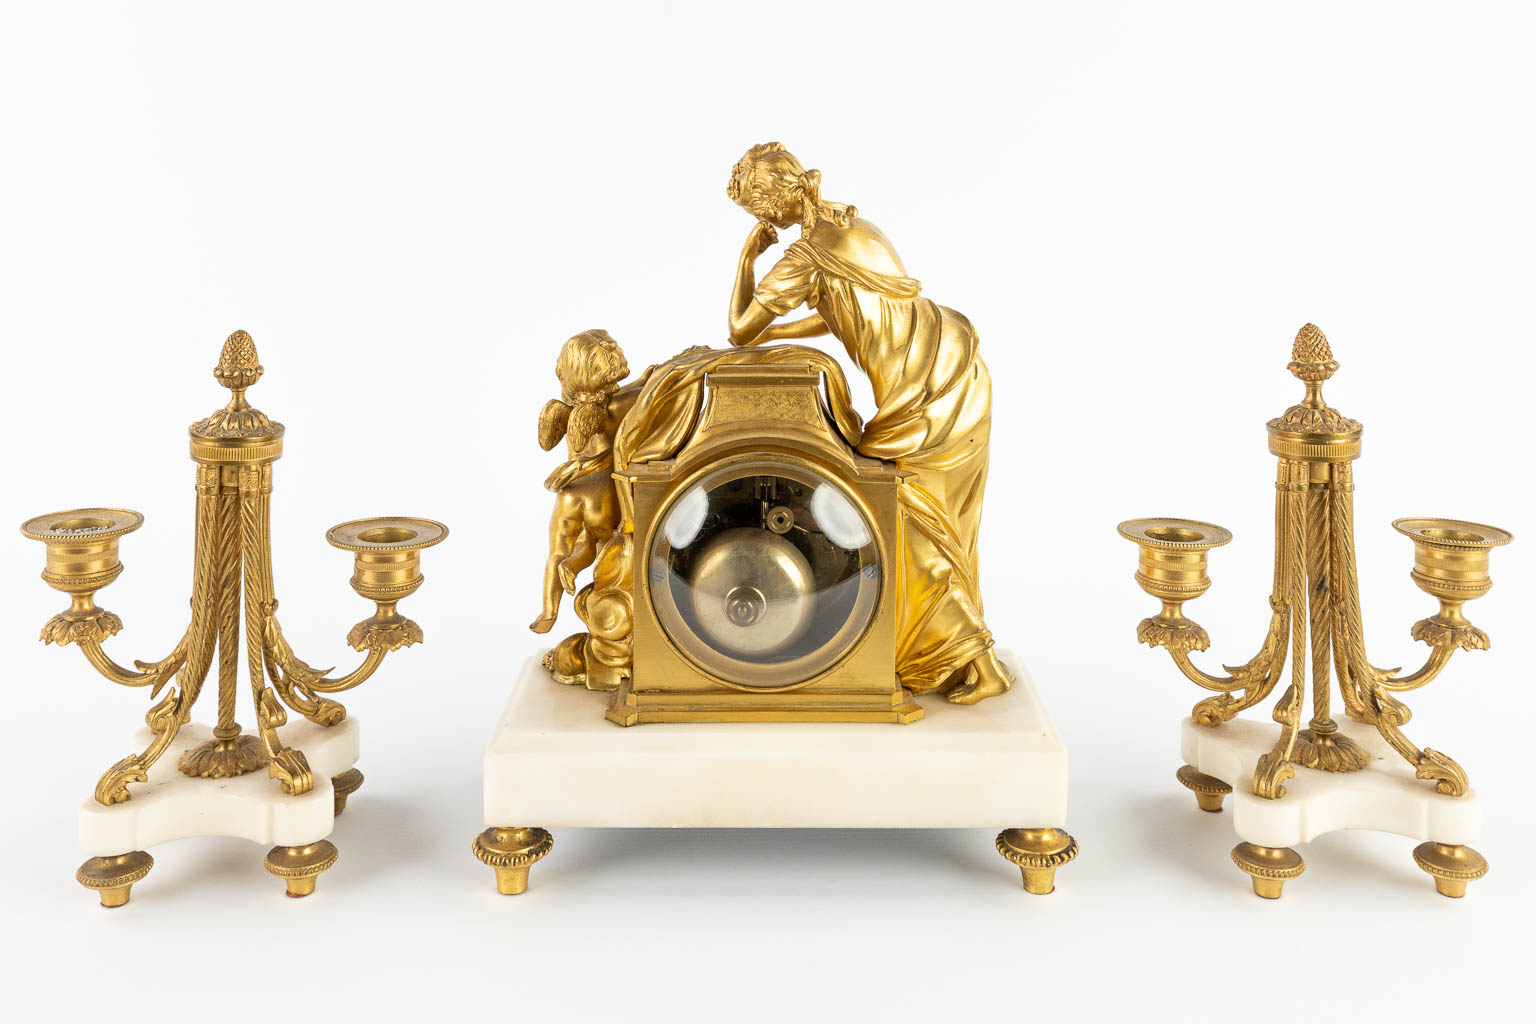 A three-piece mantle garniture clock and candelabra, gilt bronze. 19th C. (D:11,5 x W:22,5 x H:28 cm)